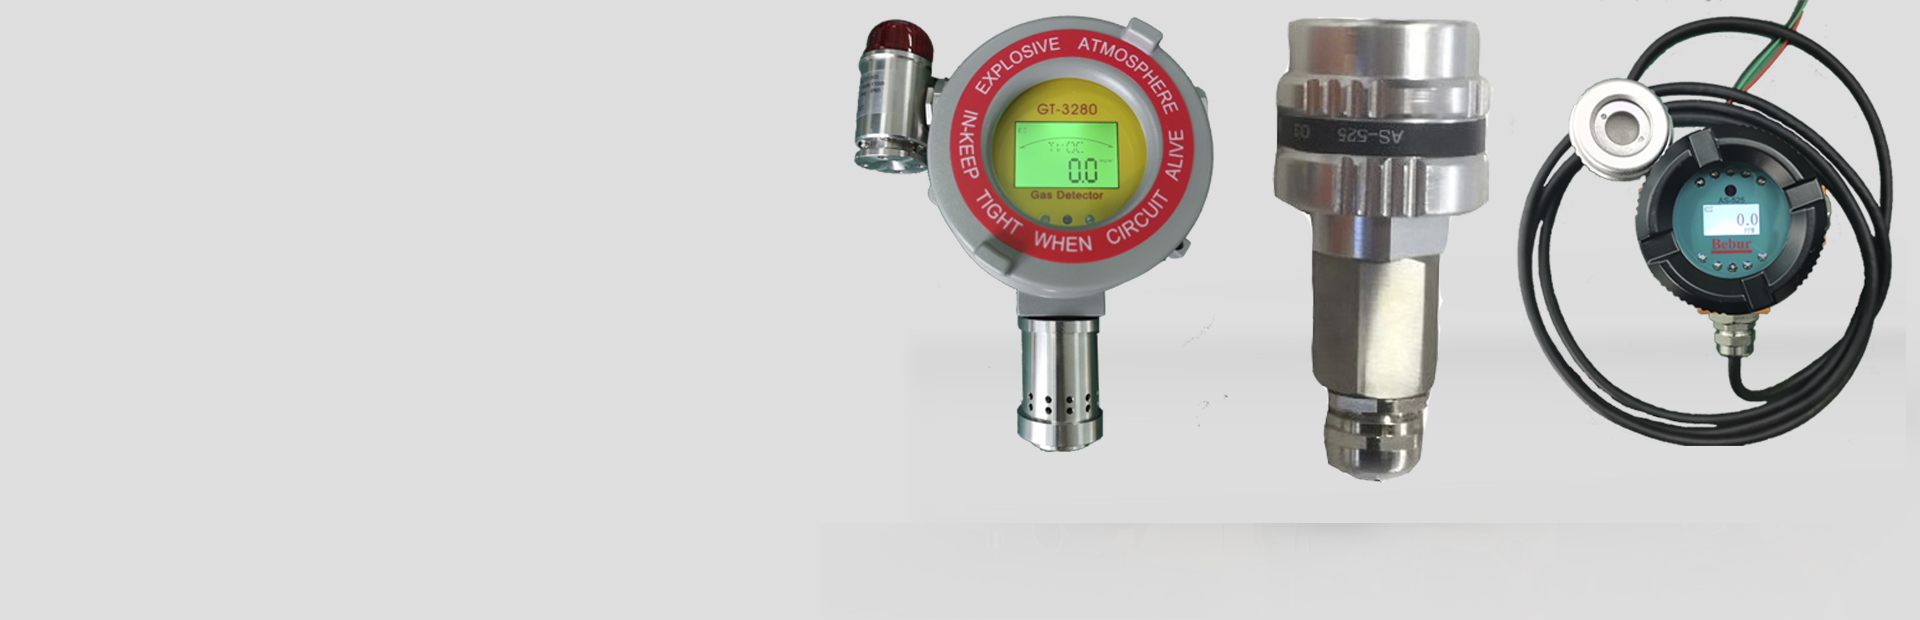 Bebur品牌臭氧含量分析仪系列产品